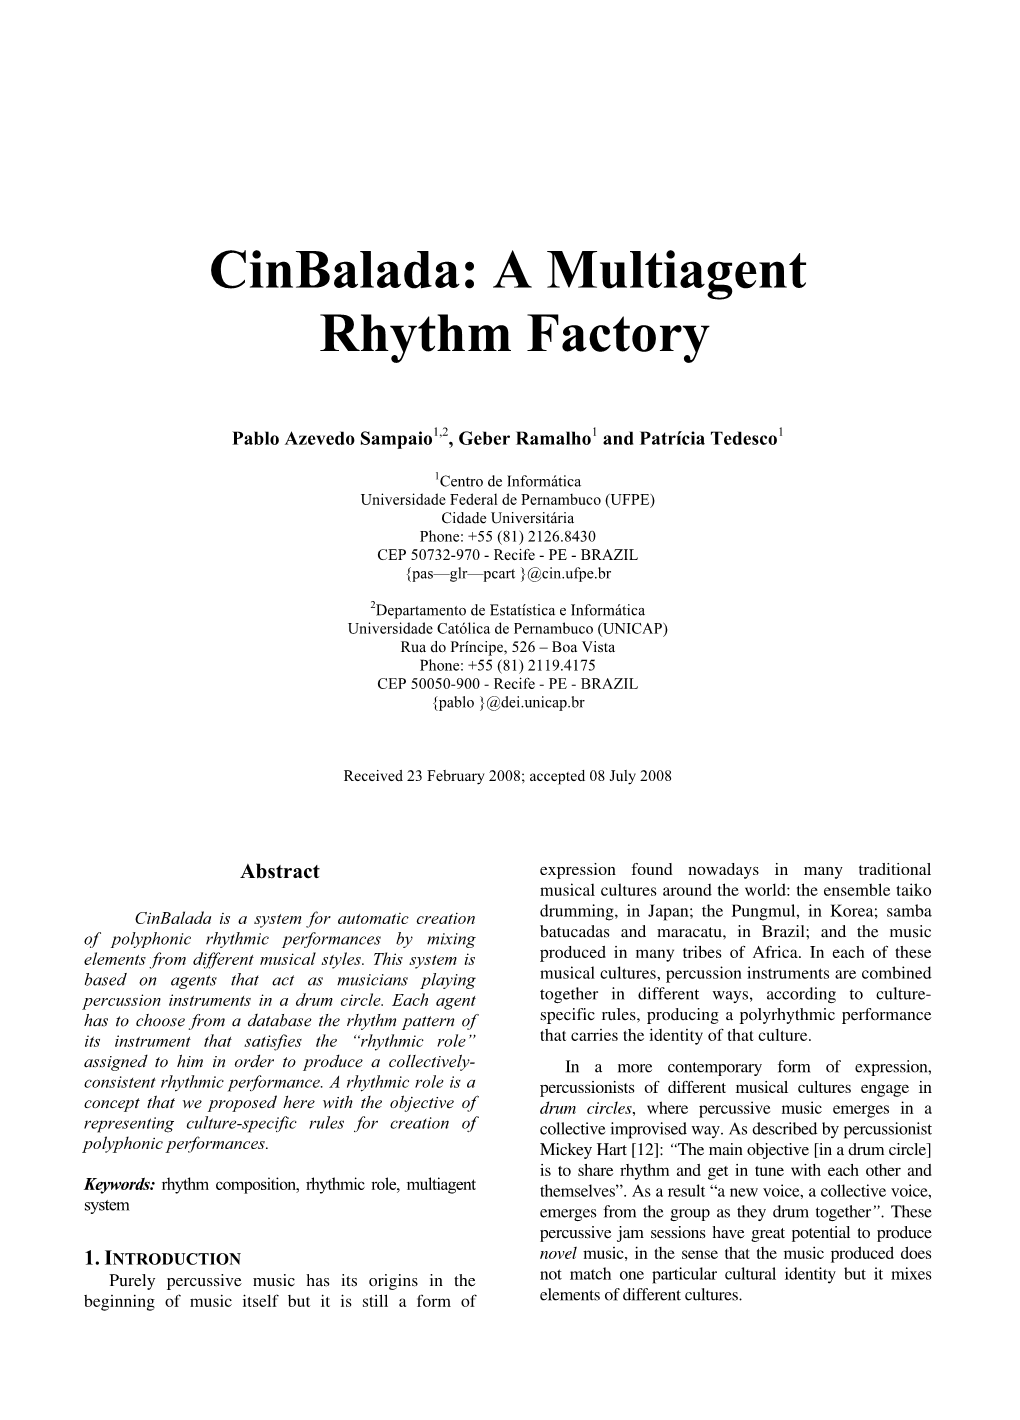 Cinbalada: a Multiagent Rhythm Factory